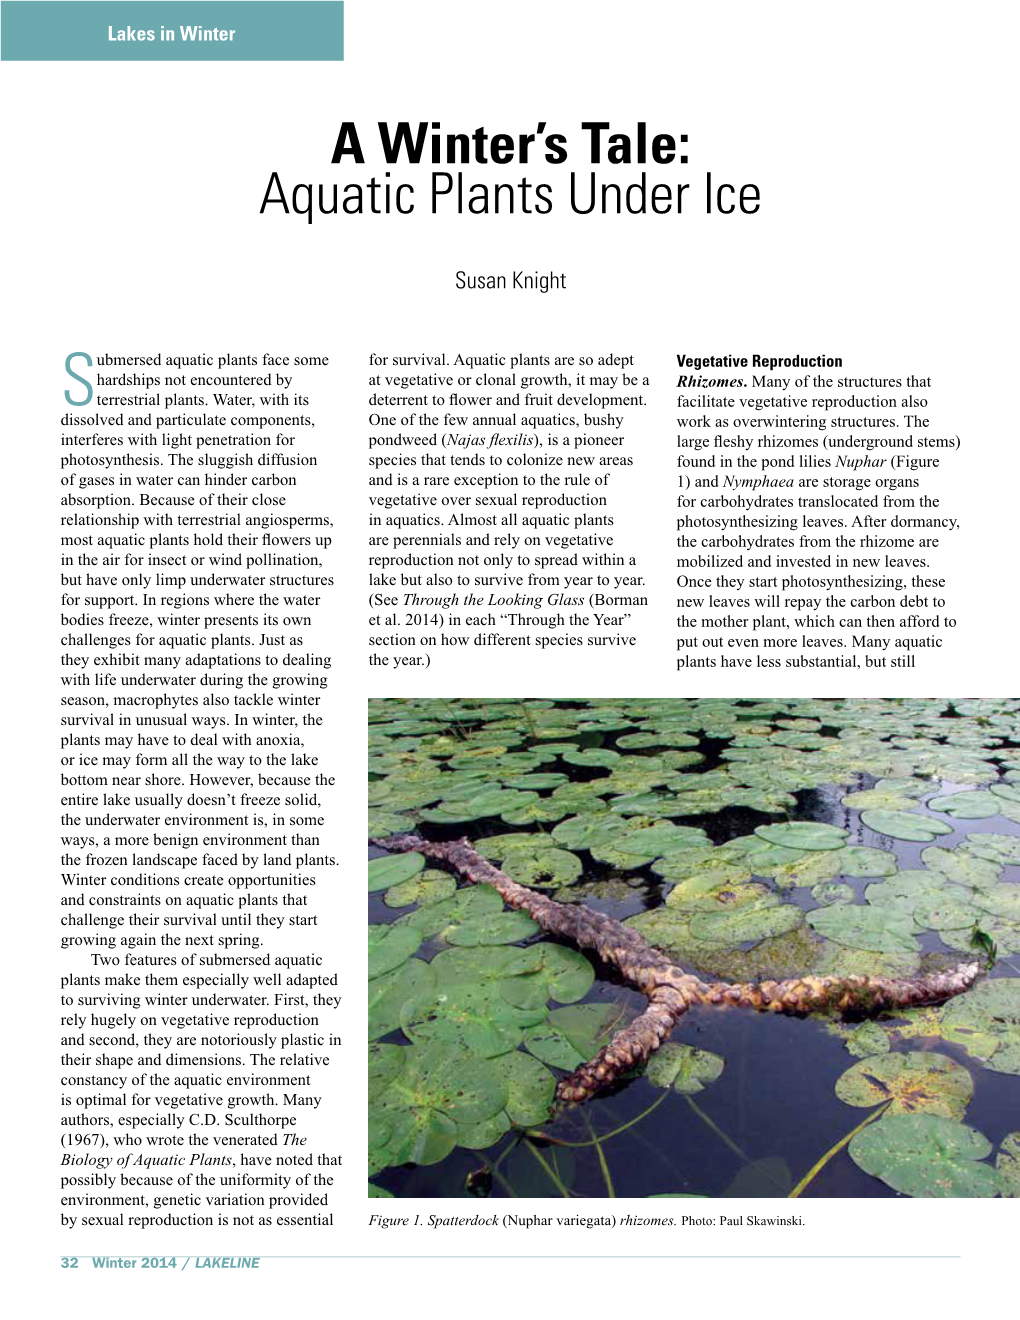 A Winter's Tale: Aquatic Plants Under